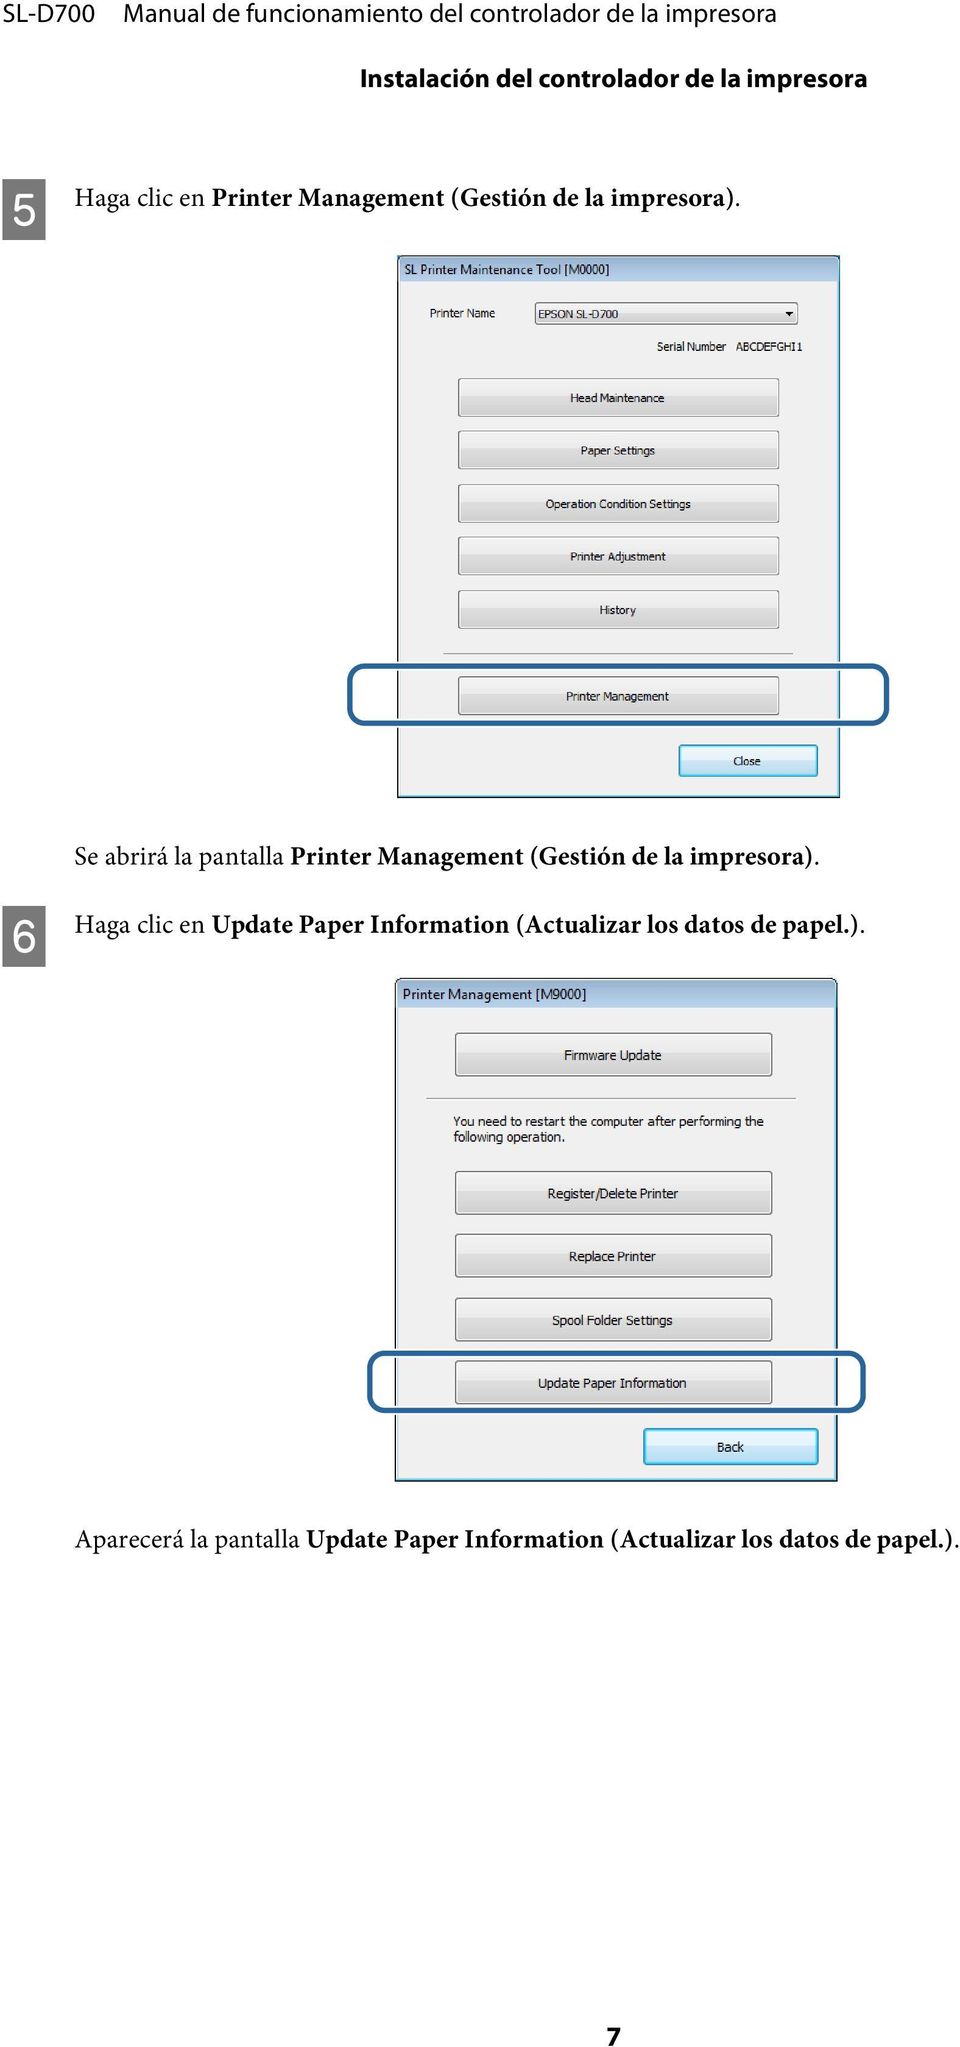 Se abrirá la pantalla Printer Management  F Haga clic en Update Paper Information